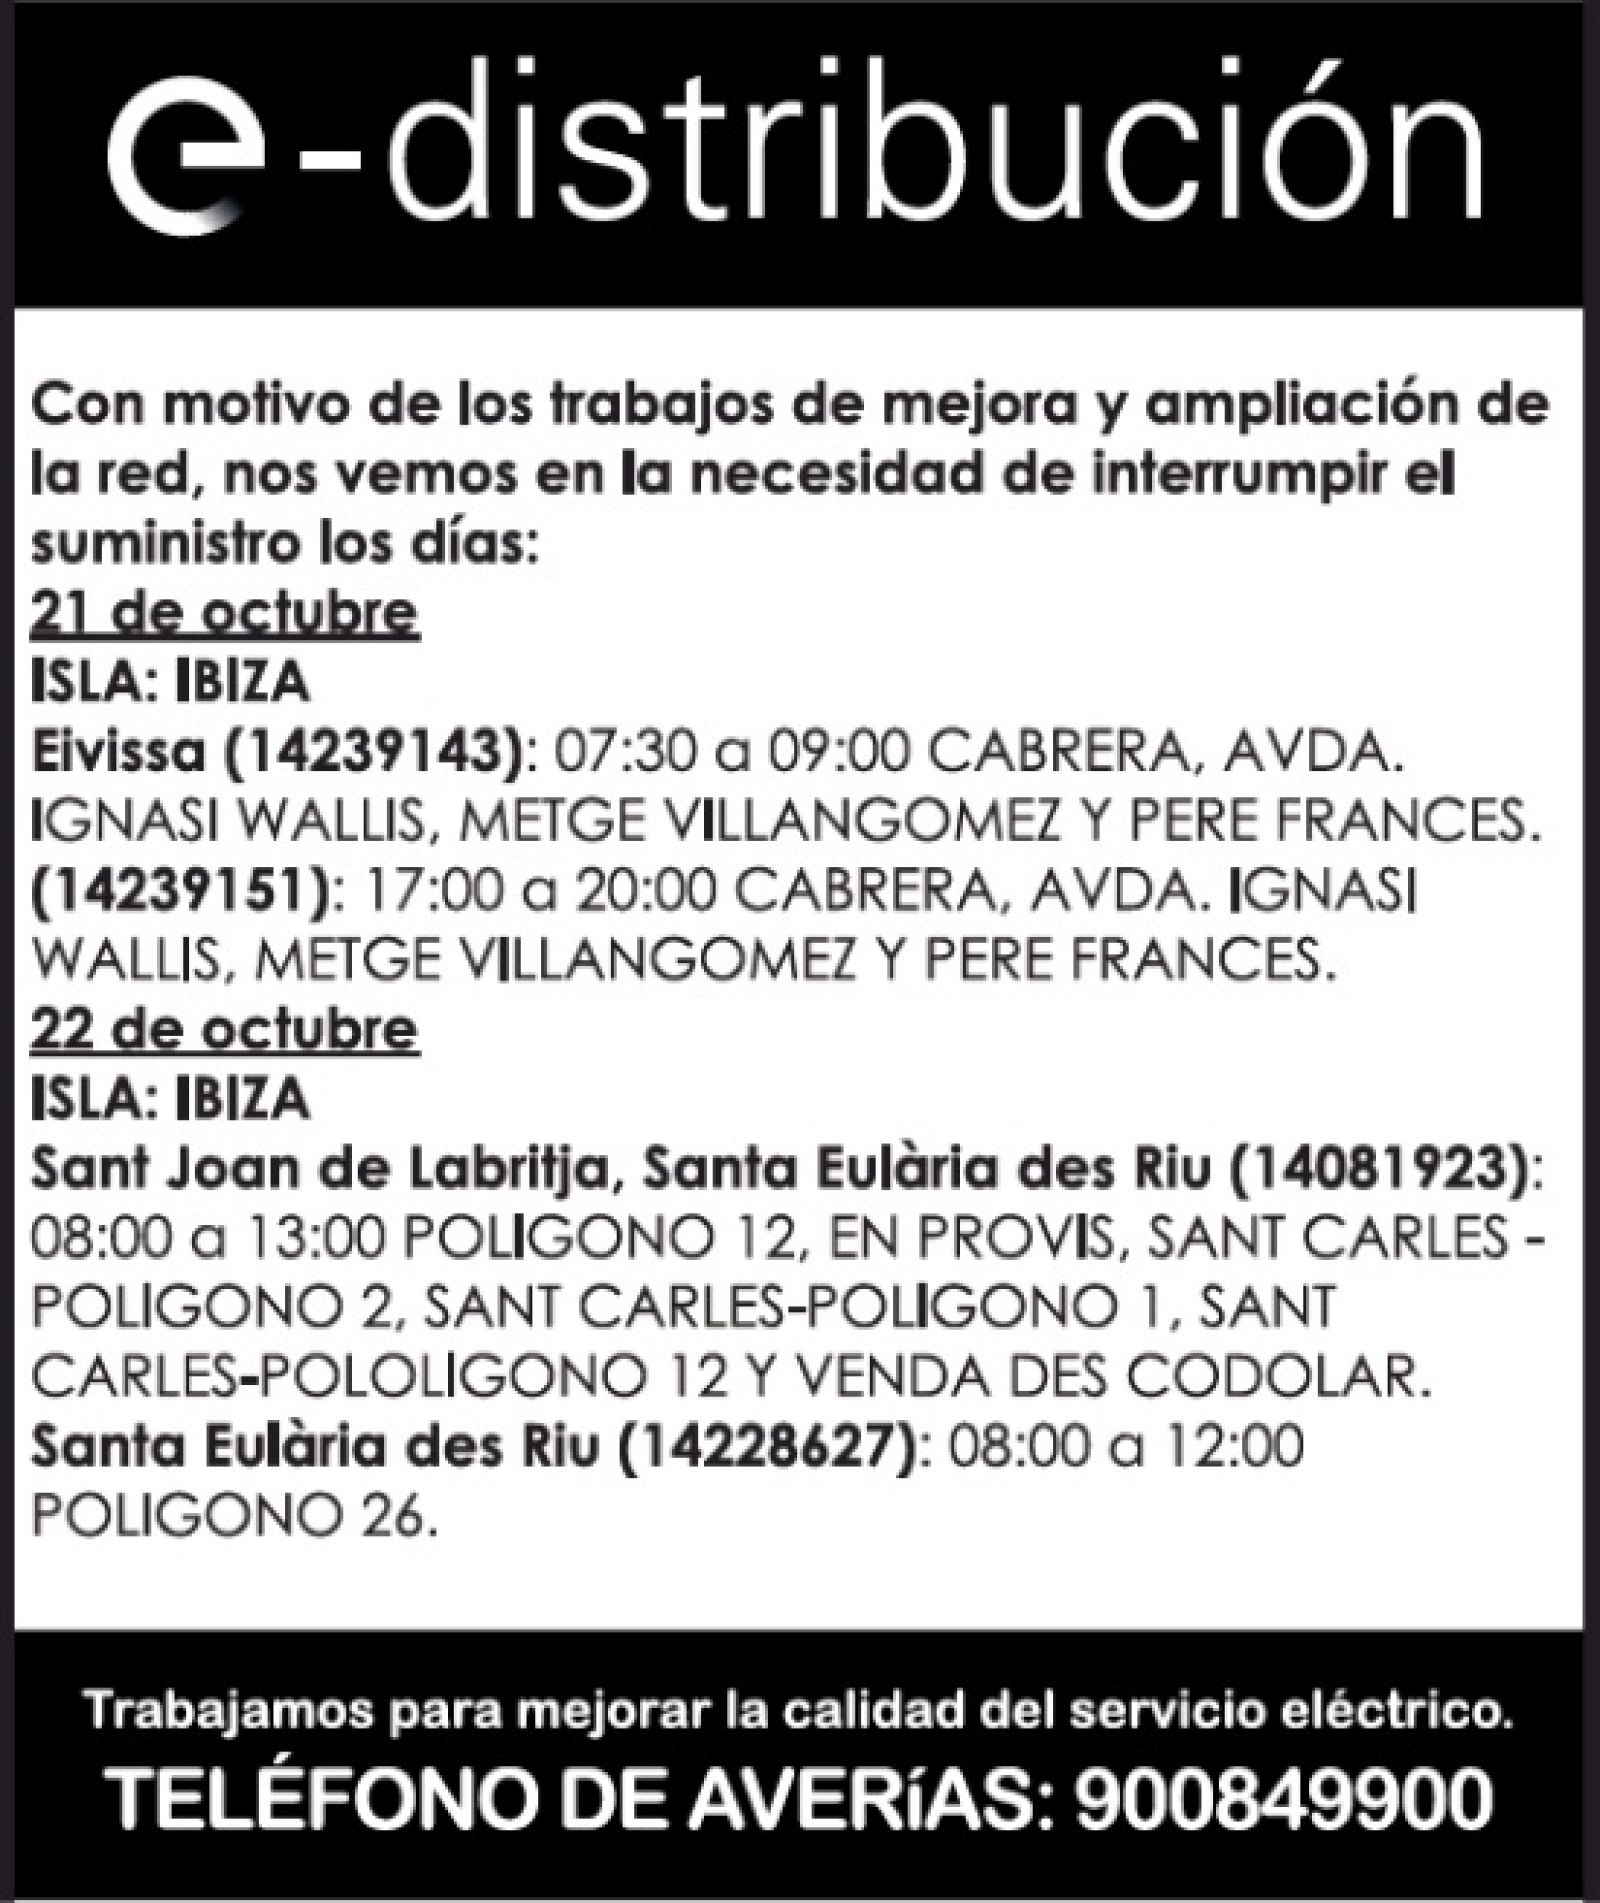 Corte temporal del suministro de energía eléctrica en diferentes zonas de Santa Eulària des Riu el día 22 de octubre